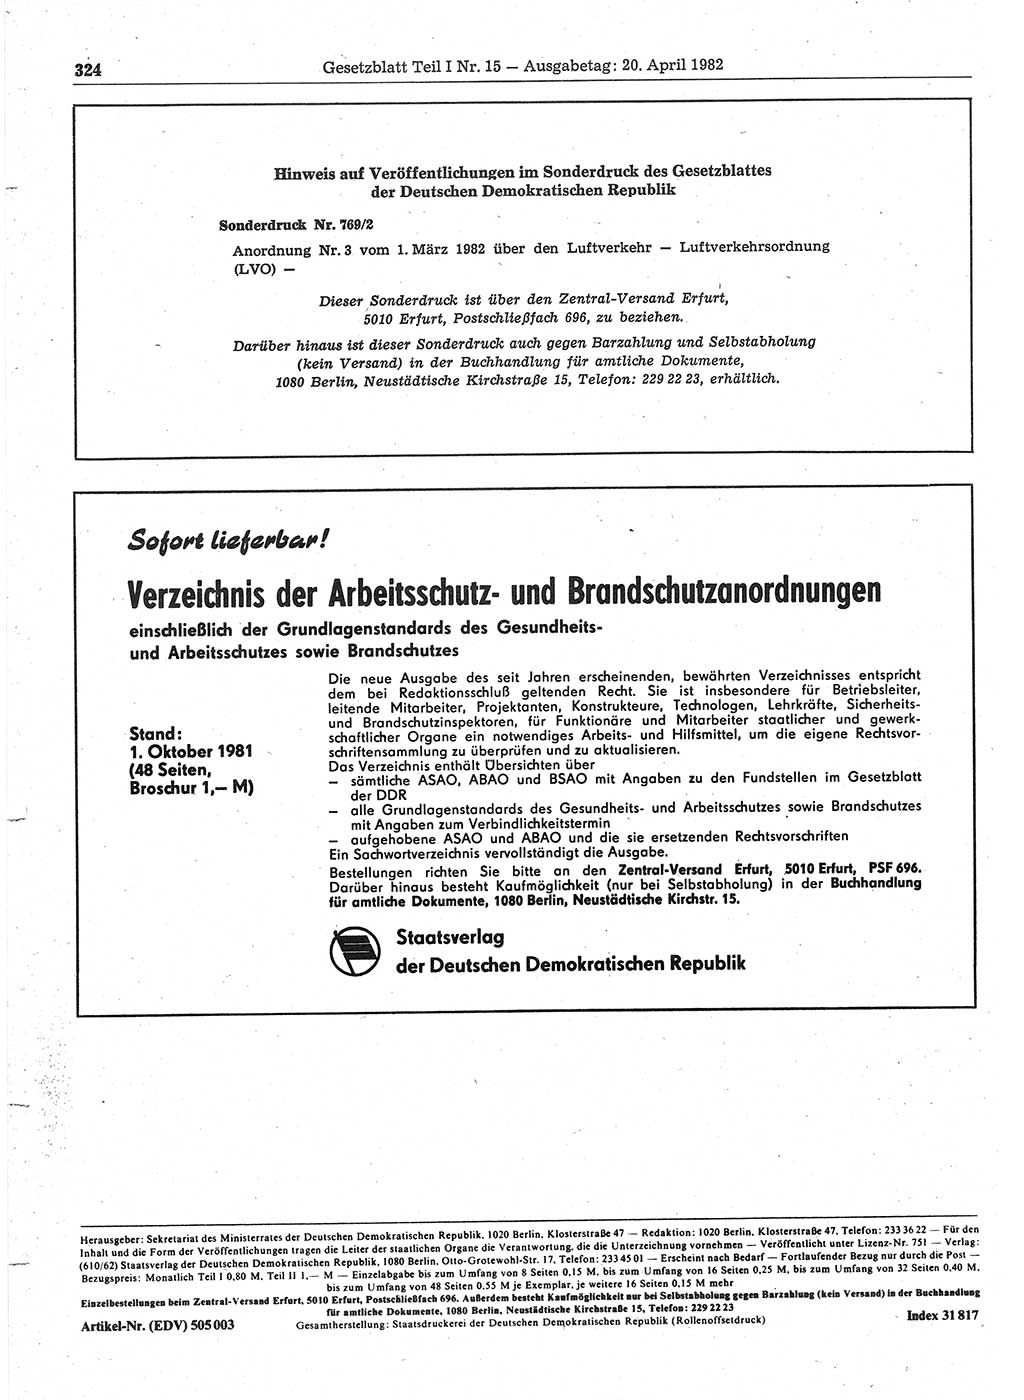 Gesetzblatt (GBl.) der Deutschen Demokratischen Republik (DDR) Teil Ⅰ 1982, Seite 324 (GBl. DDR Ⅰ 1982, S. 324)